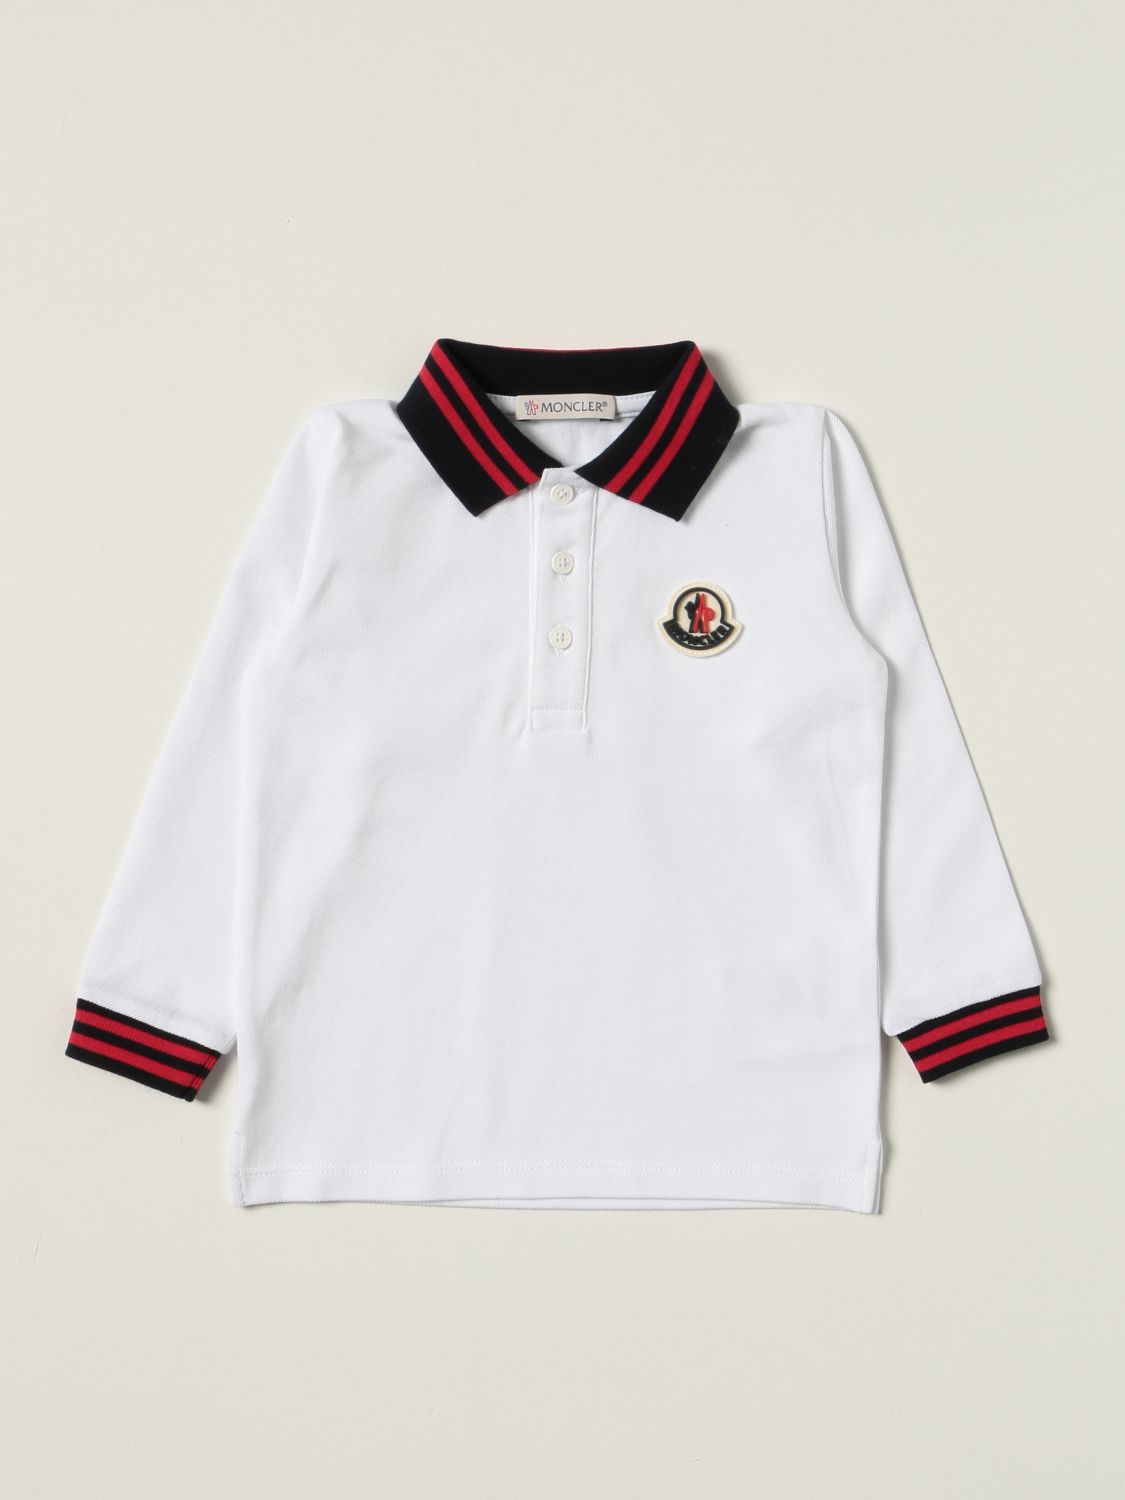 Moncler Babies' Polo Shirt In Cotton With Logo | ModeSens